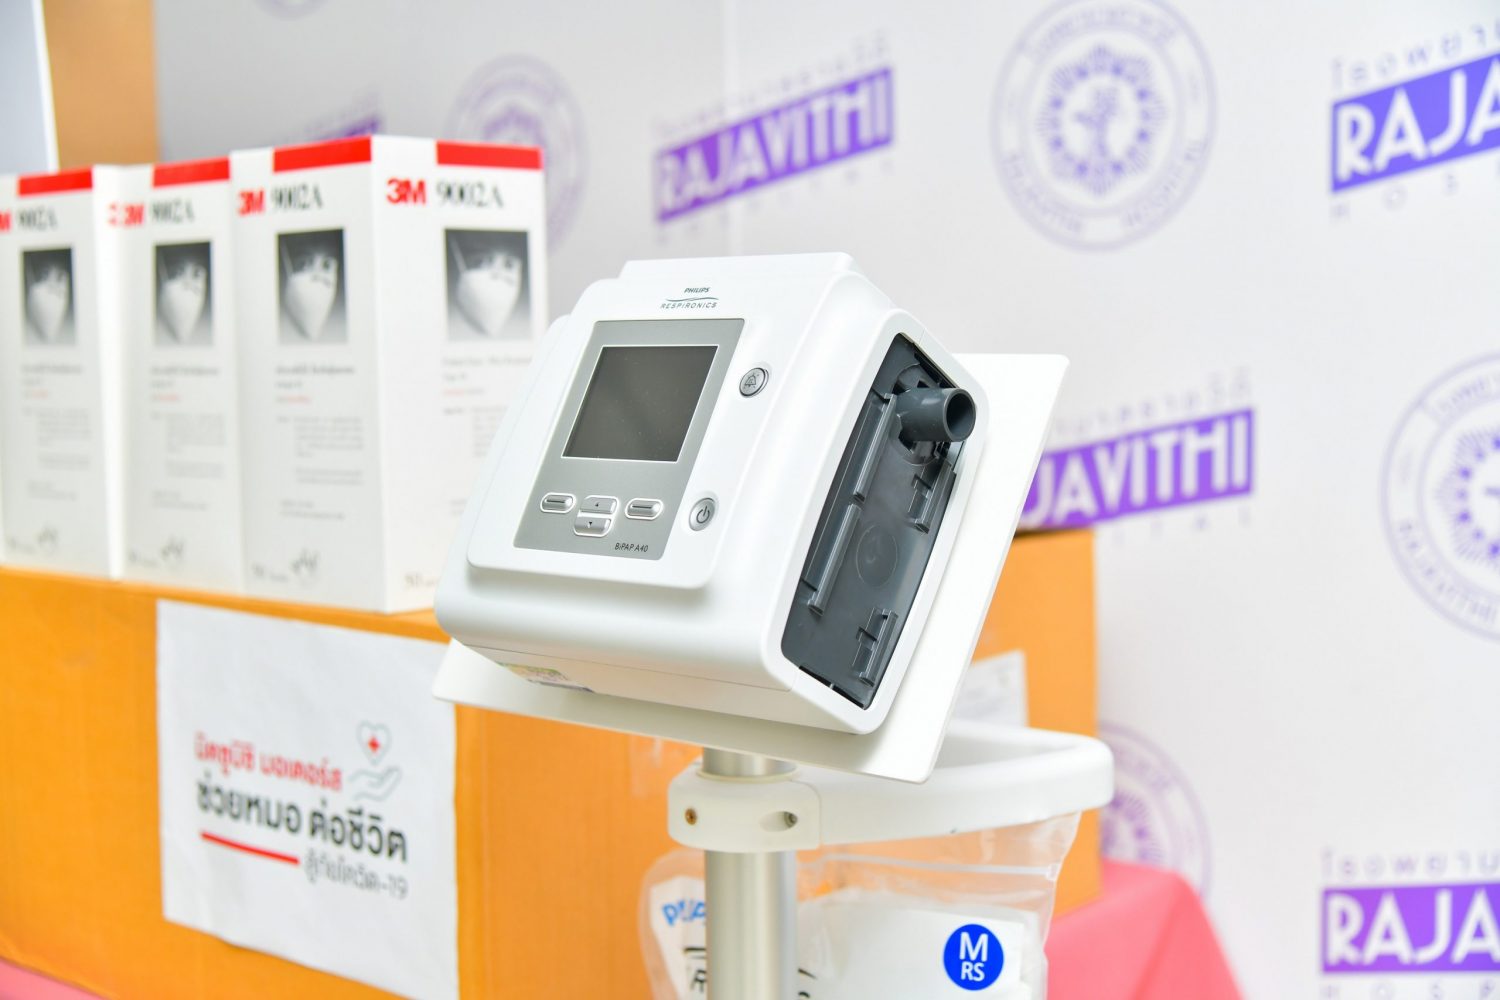 มิตซูบิชิ มอเตอร์ส ประเทศไทย ให้การสนับสนุน รพ. ราชวิถี 1 ใน โรงพยาบาล 6 แห่ง เพื่อต่อสู้กับการแพร่ระบาดของโรคโควิด-19